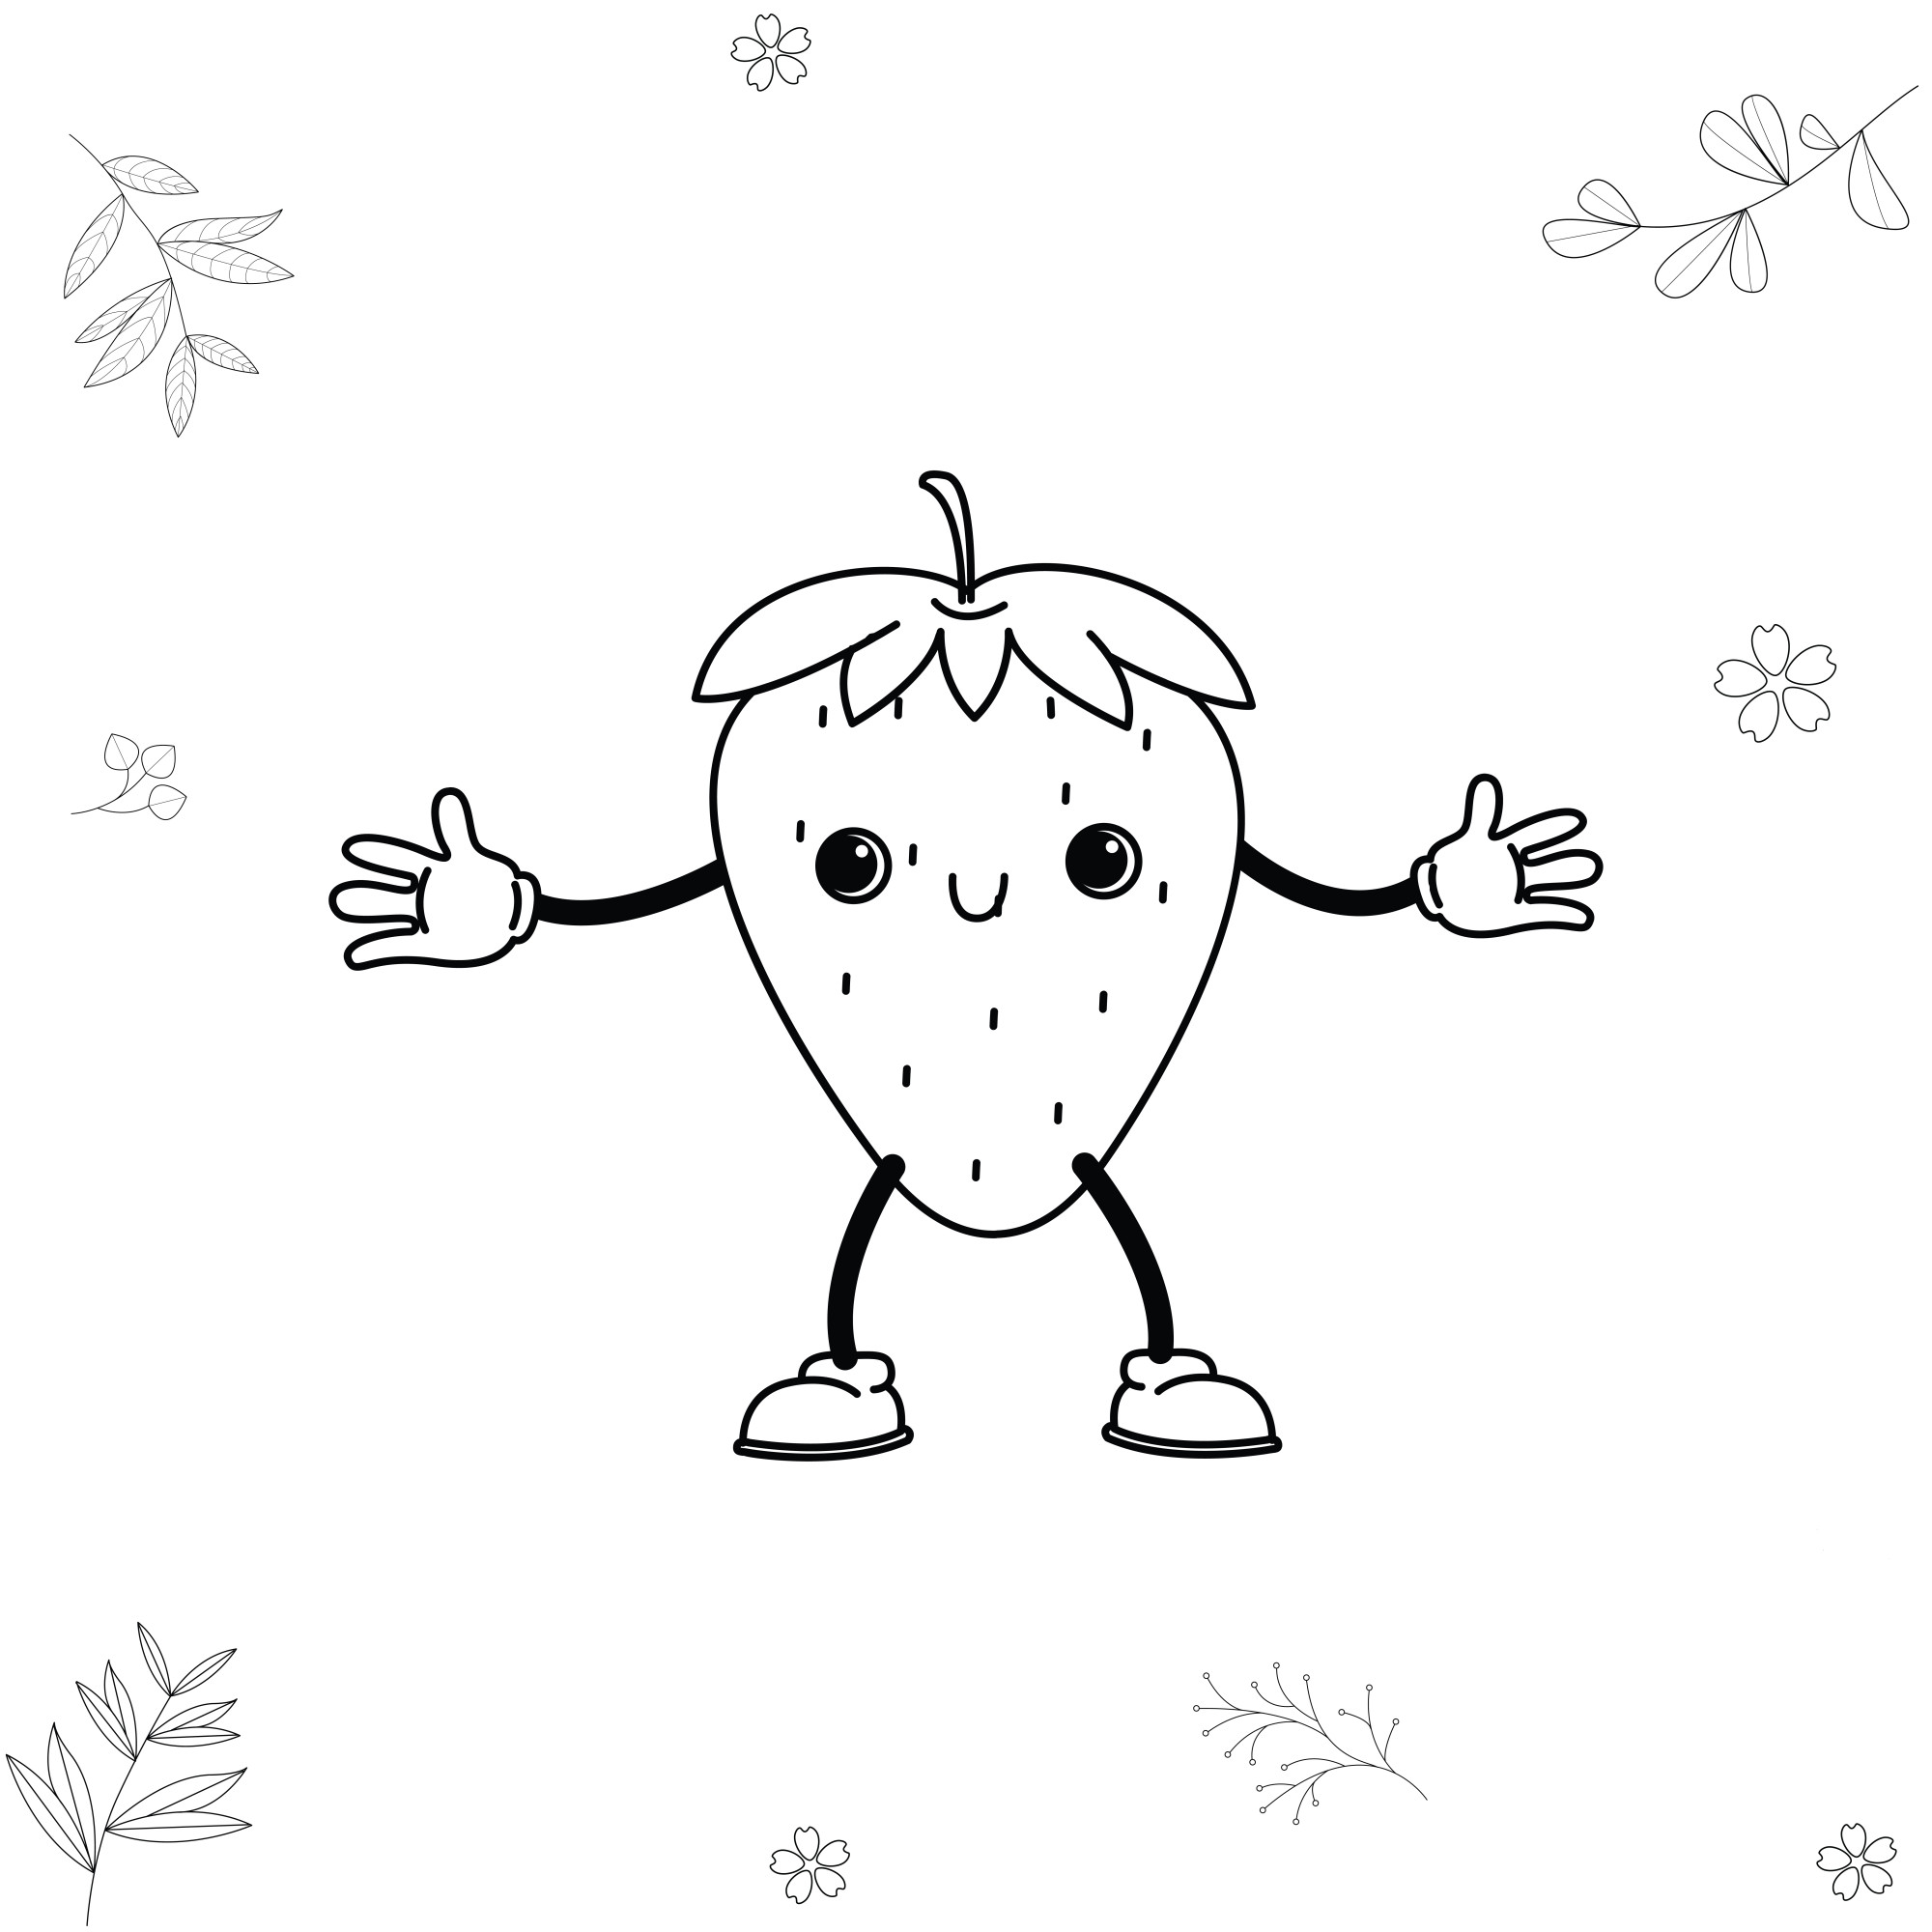 Раскраска для детей: мультяшная клубника с руками и ногами